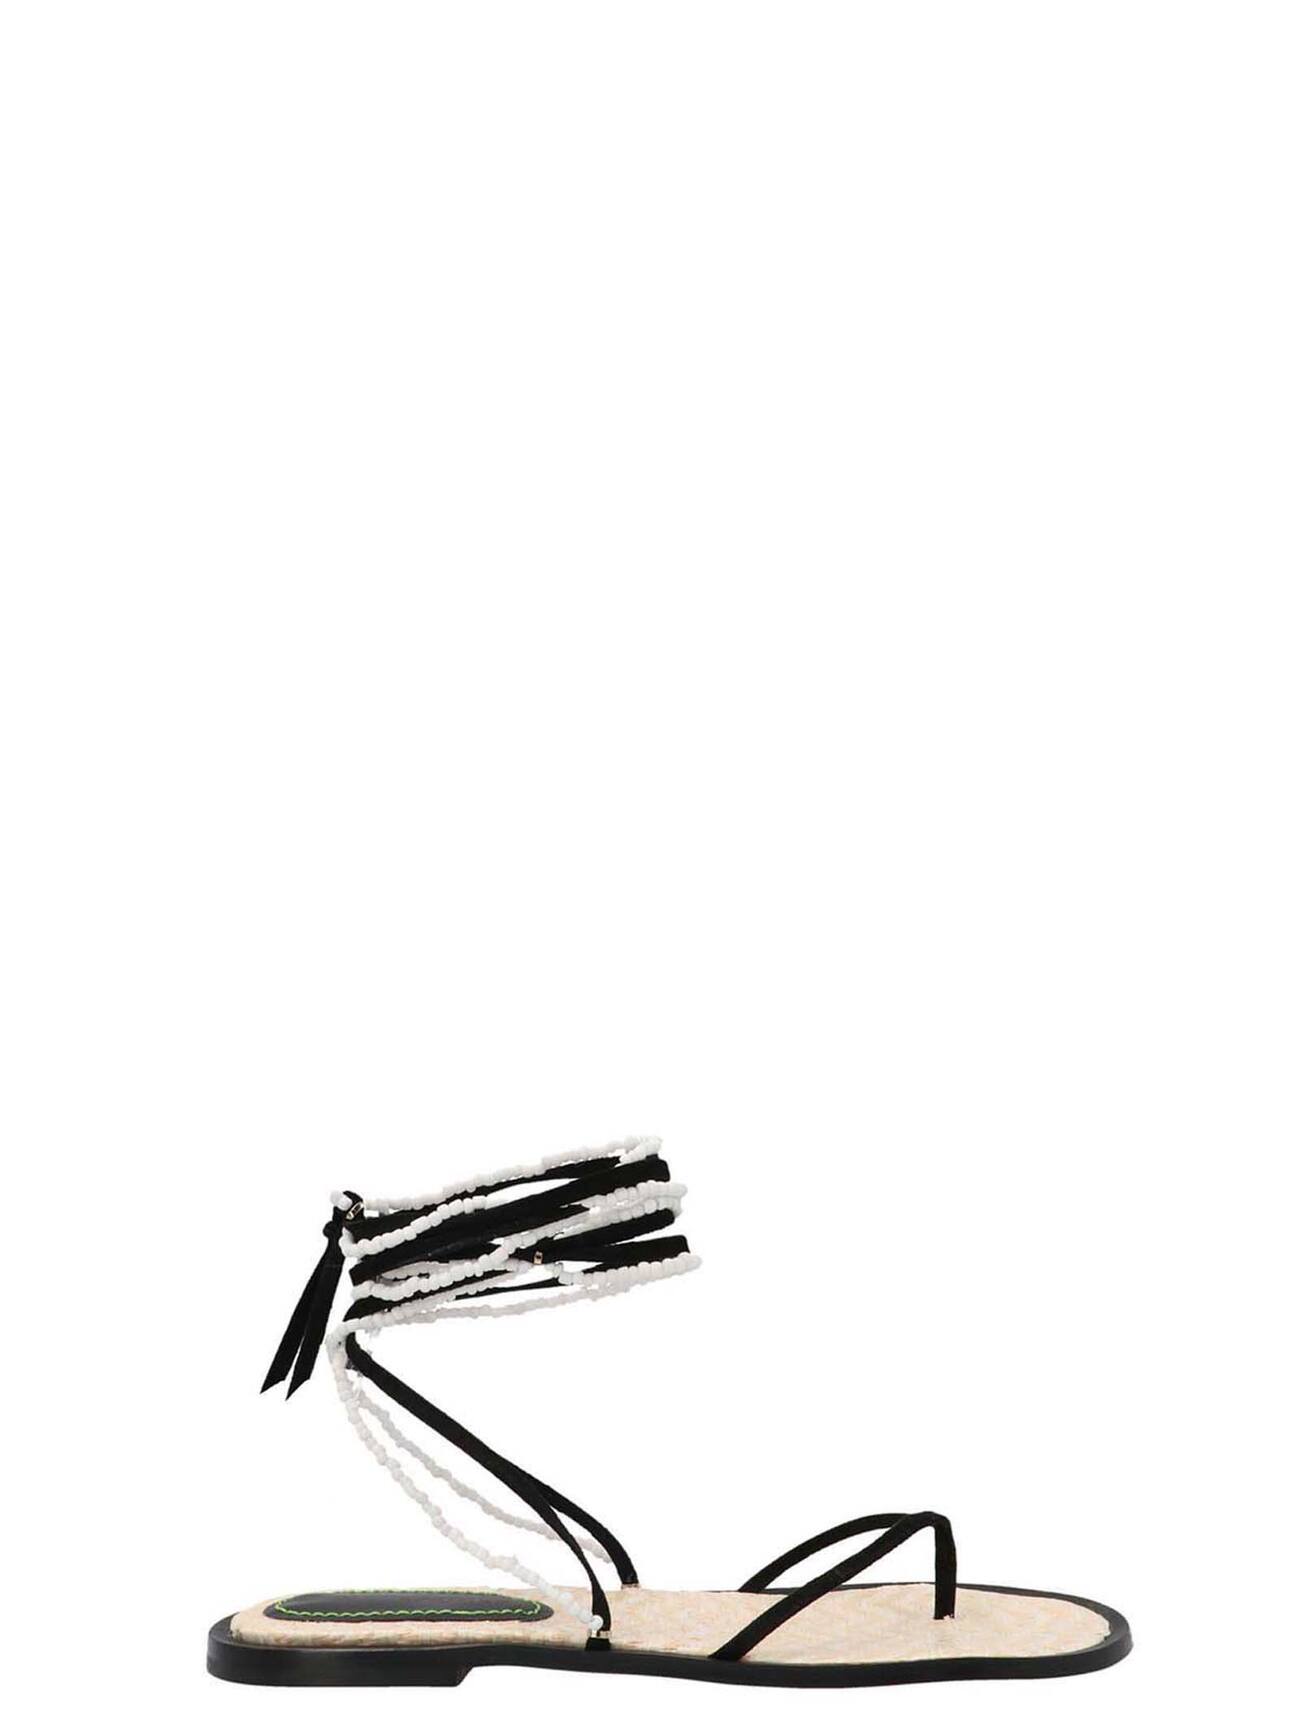 The Saddler Bead Sandals in black / white